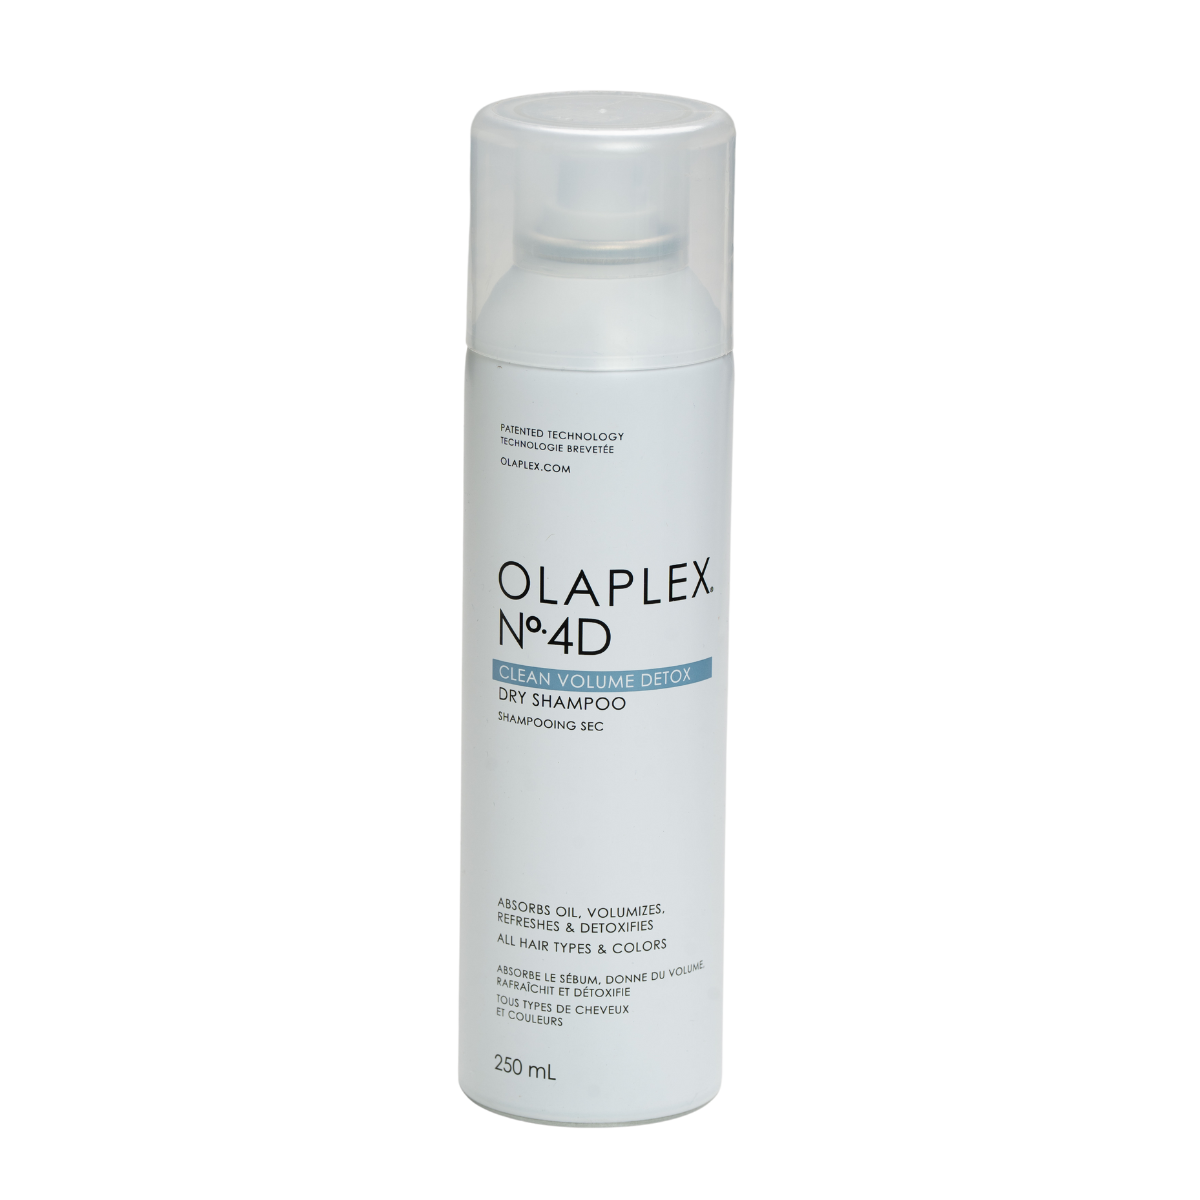 שמפו יבש לניקוי עמוק ללא שטיפה OLAPLEX NO 4D אולפלקס 250 מ"ל